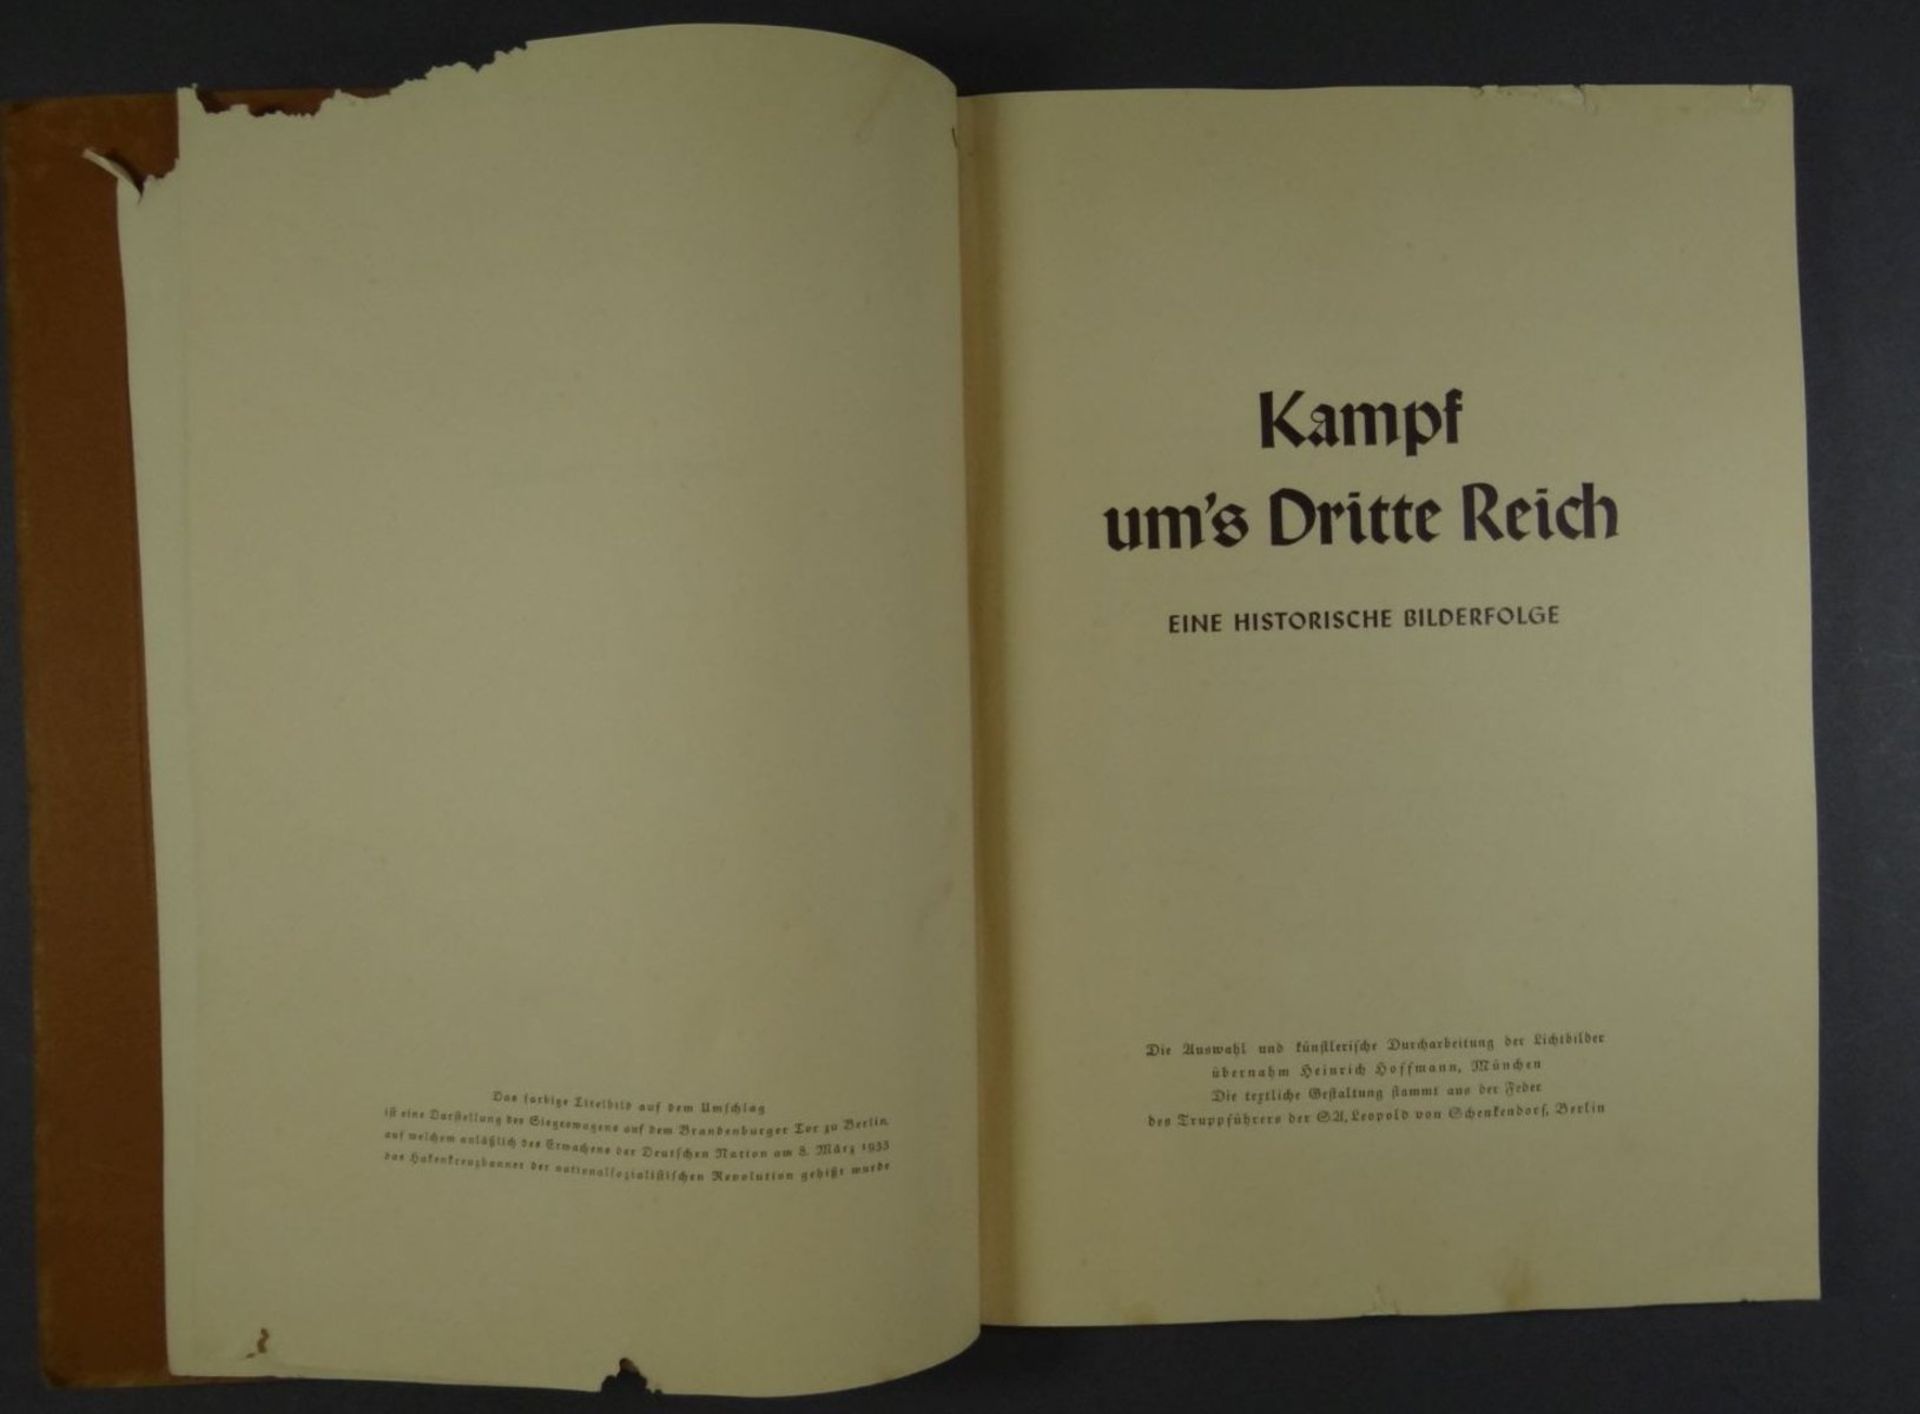 Sammelalbum "Kampf ums Dritte Reich", wohl komplett, Deckblatt beschädigt, fleckig - Image 3 of 10